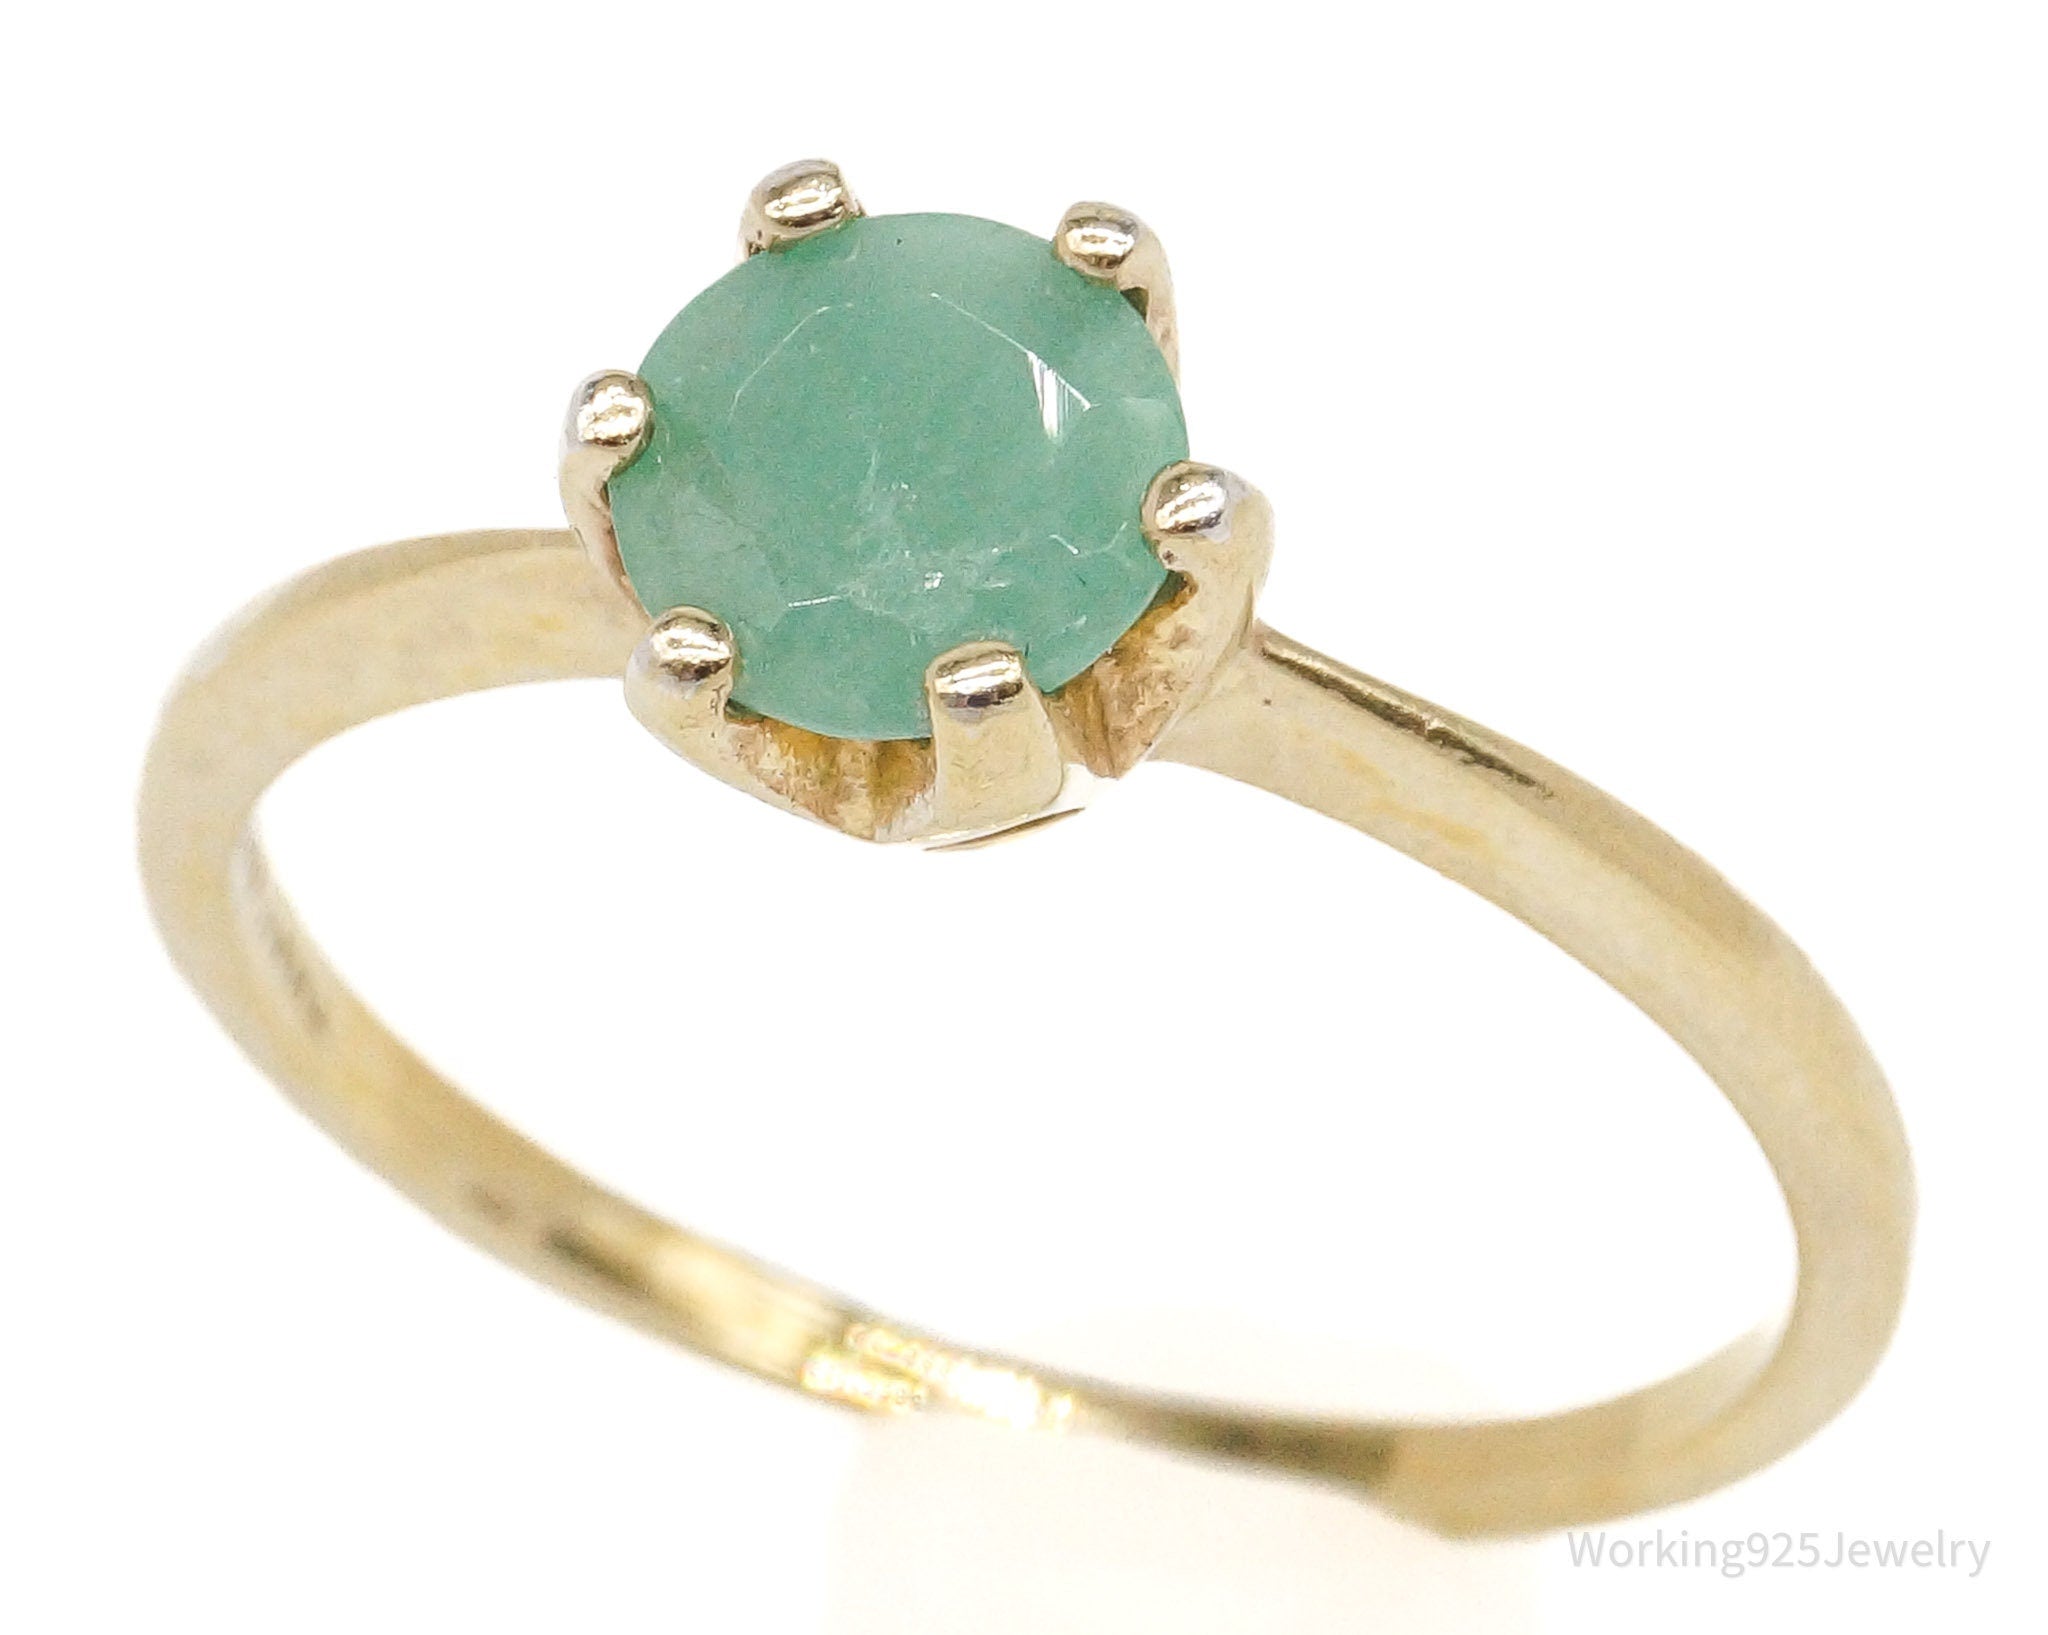 Vintage RJ Green Jade Gold Vermeil Sterling Silver Ring - Size 7.25